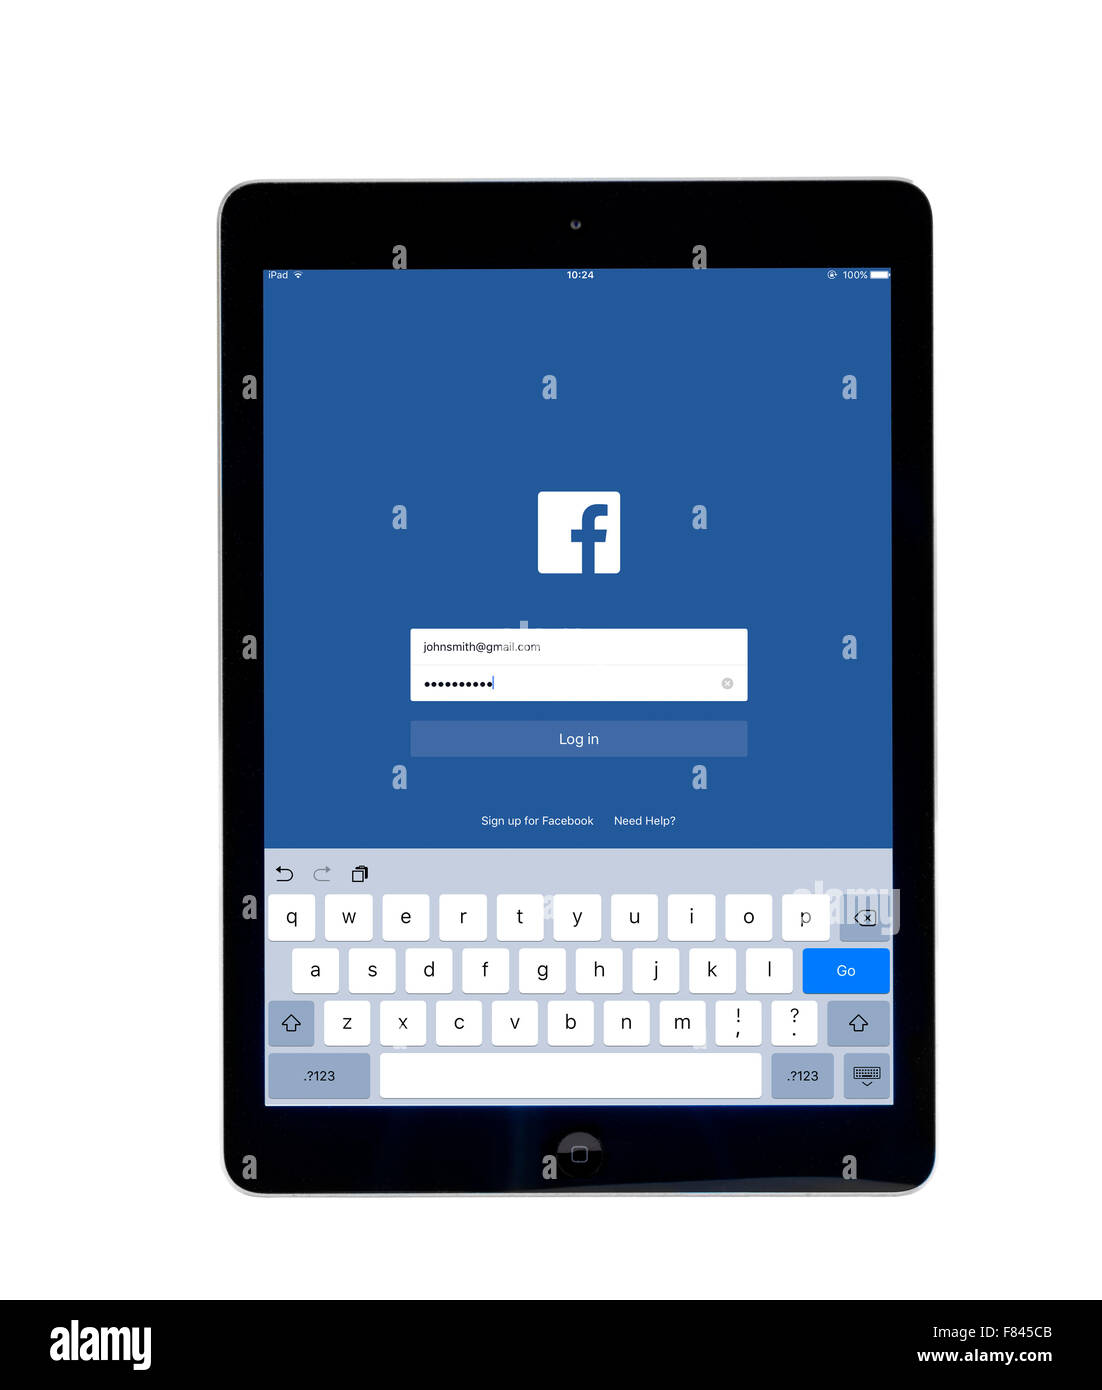 Melden Sie sich an die Seite auf der Facebook-app auf einem iPad Air angesehen Stockfoto